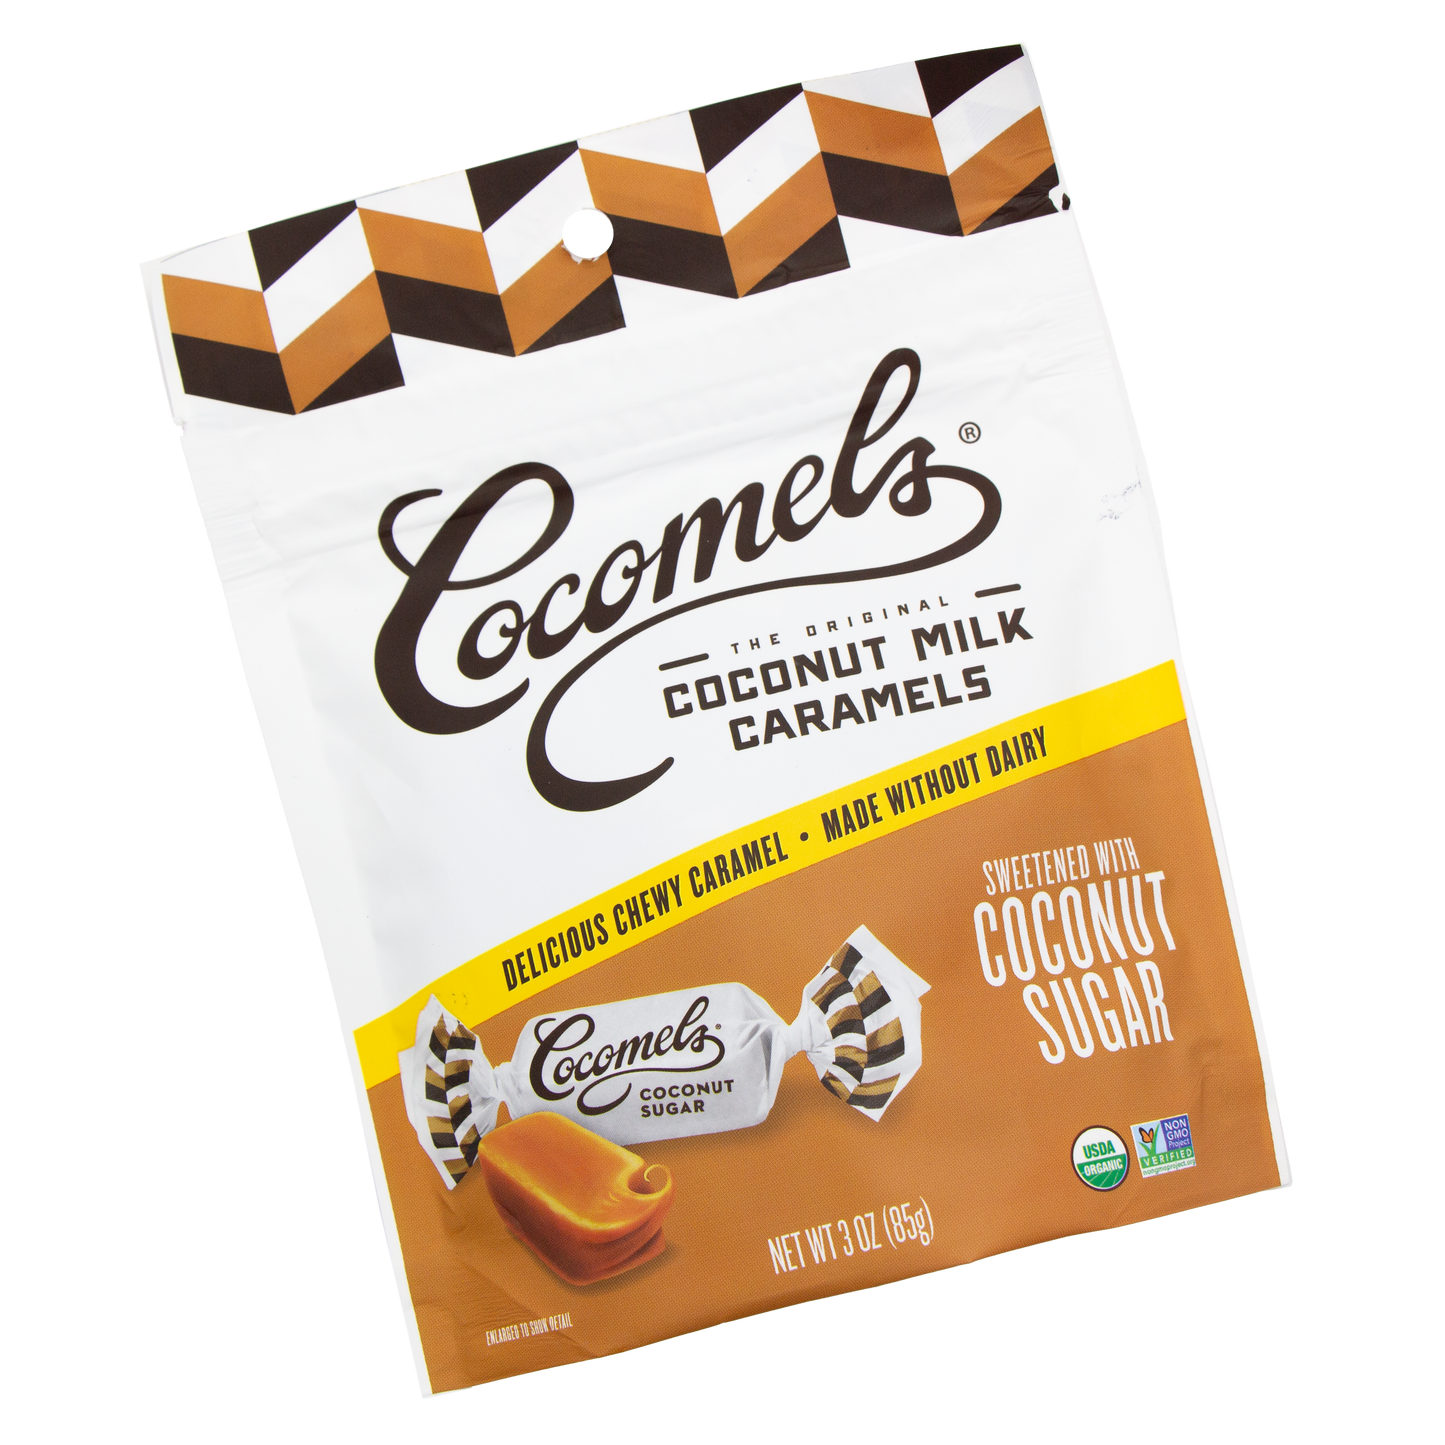 Cocomels - Coconut Milk Caramel Coconut Sugar